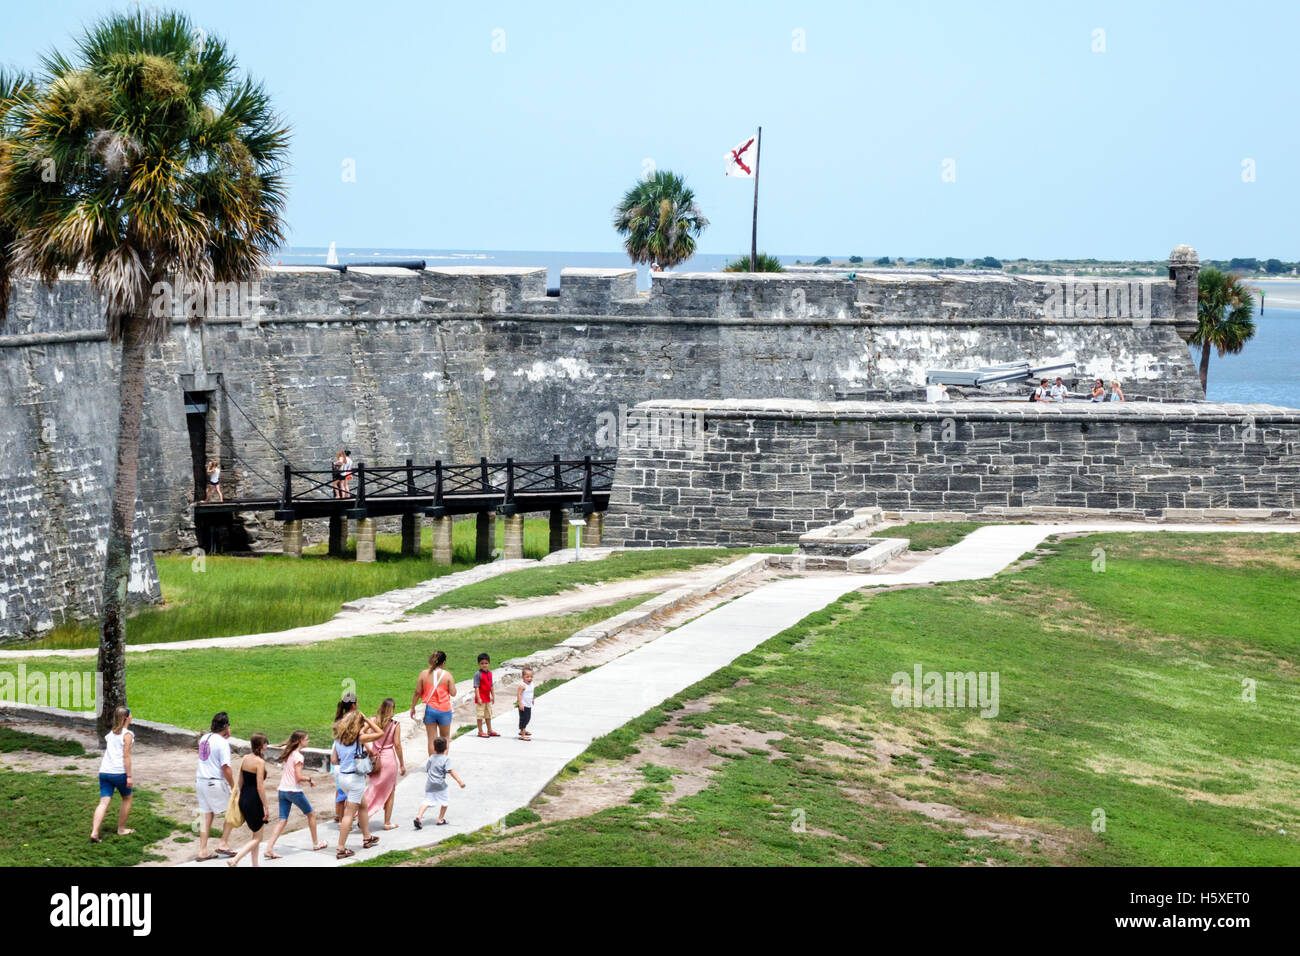 St. Saint Augustine Florida, Castillo de San Marcos National Monument, historische Festung, Coquina-Mauerwerk, Mauer, FL160802071 Stockfoto